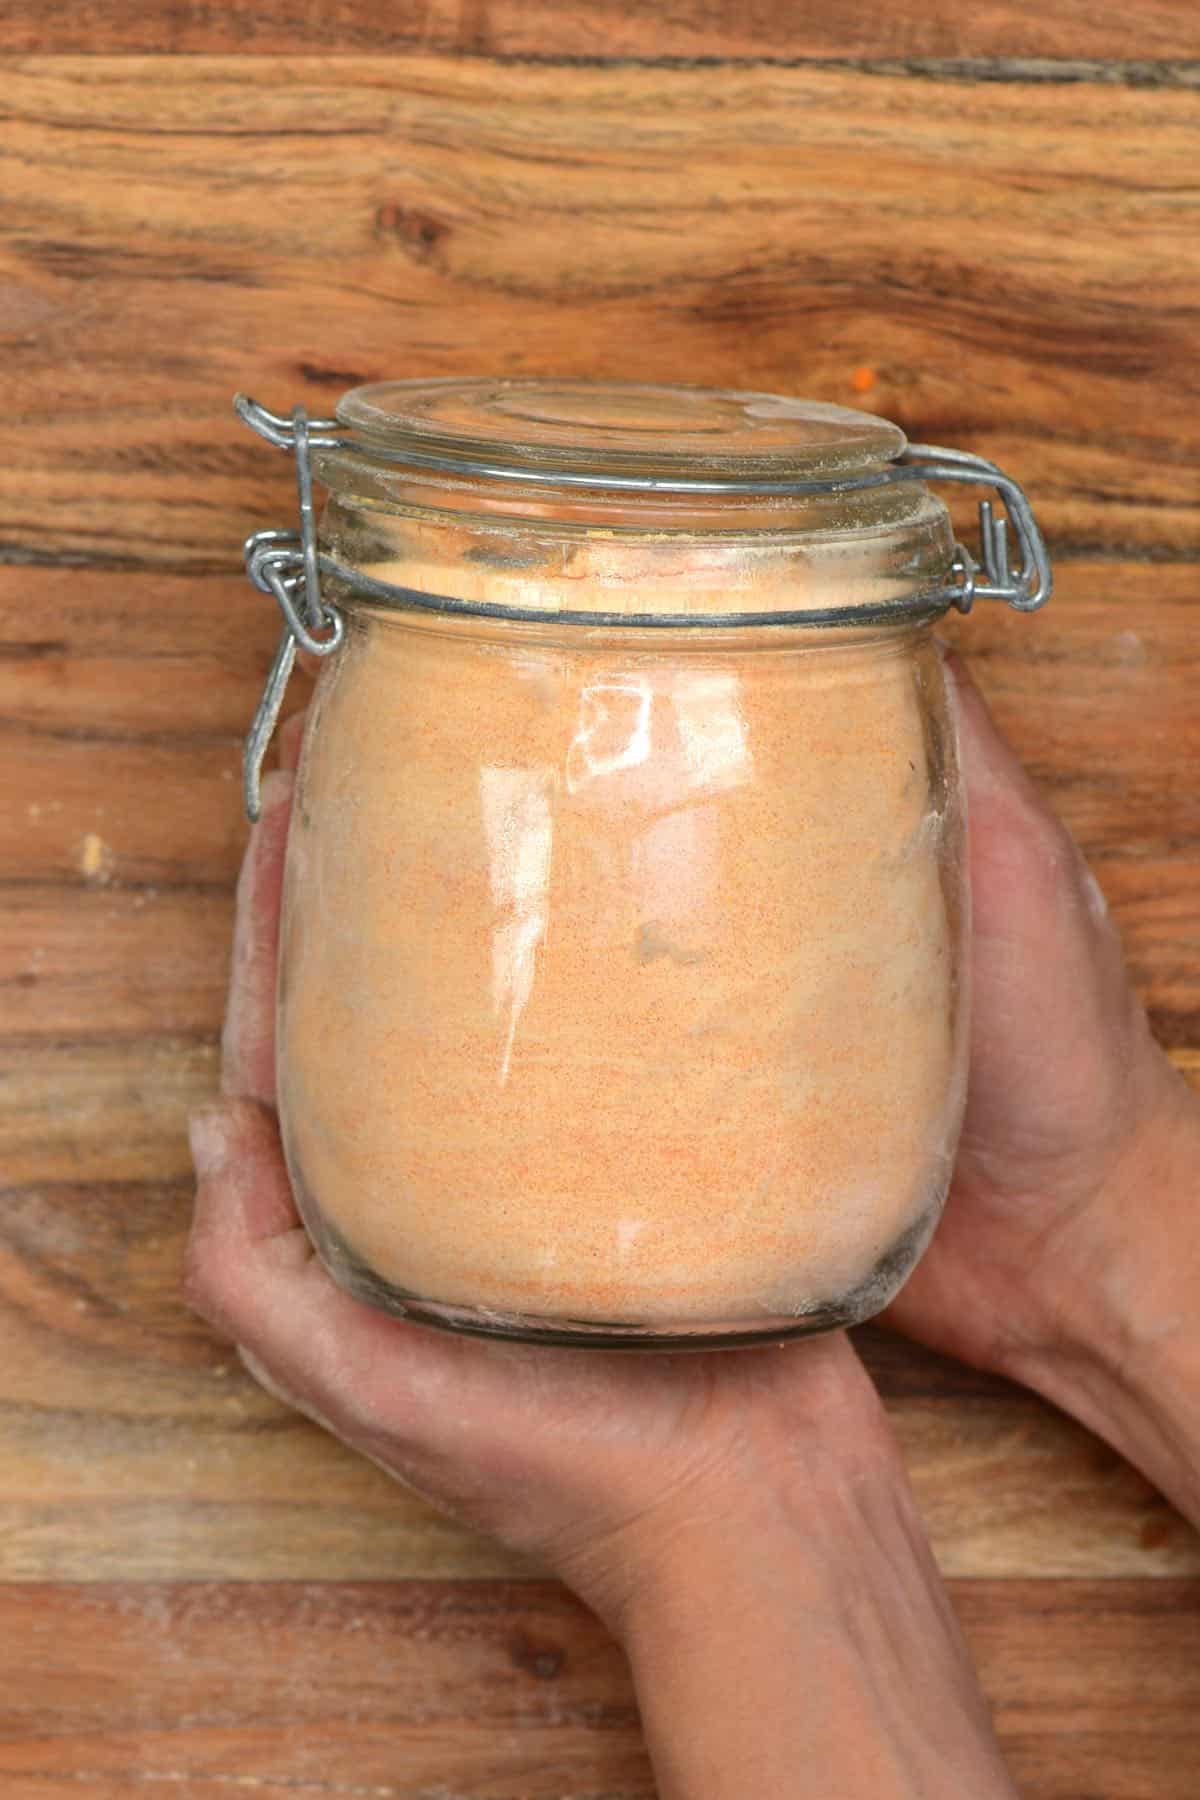 Red lentil flour in a jar